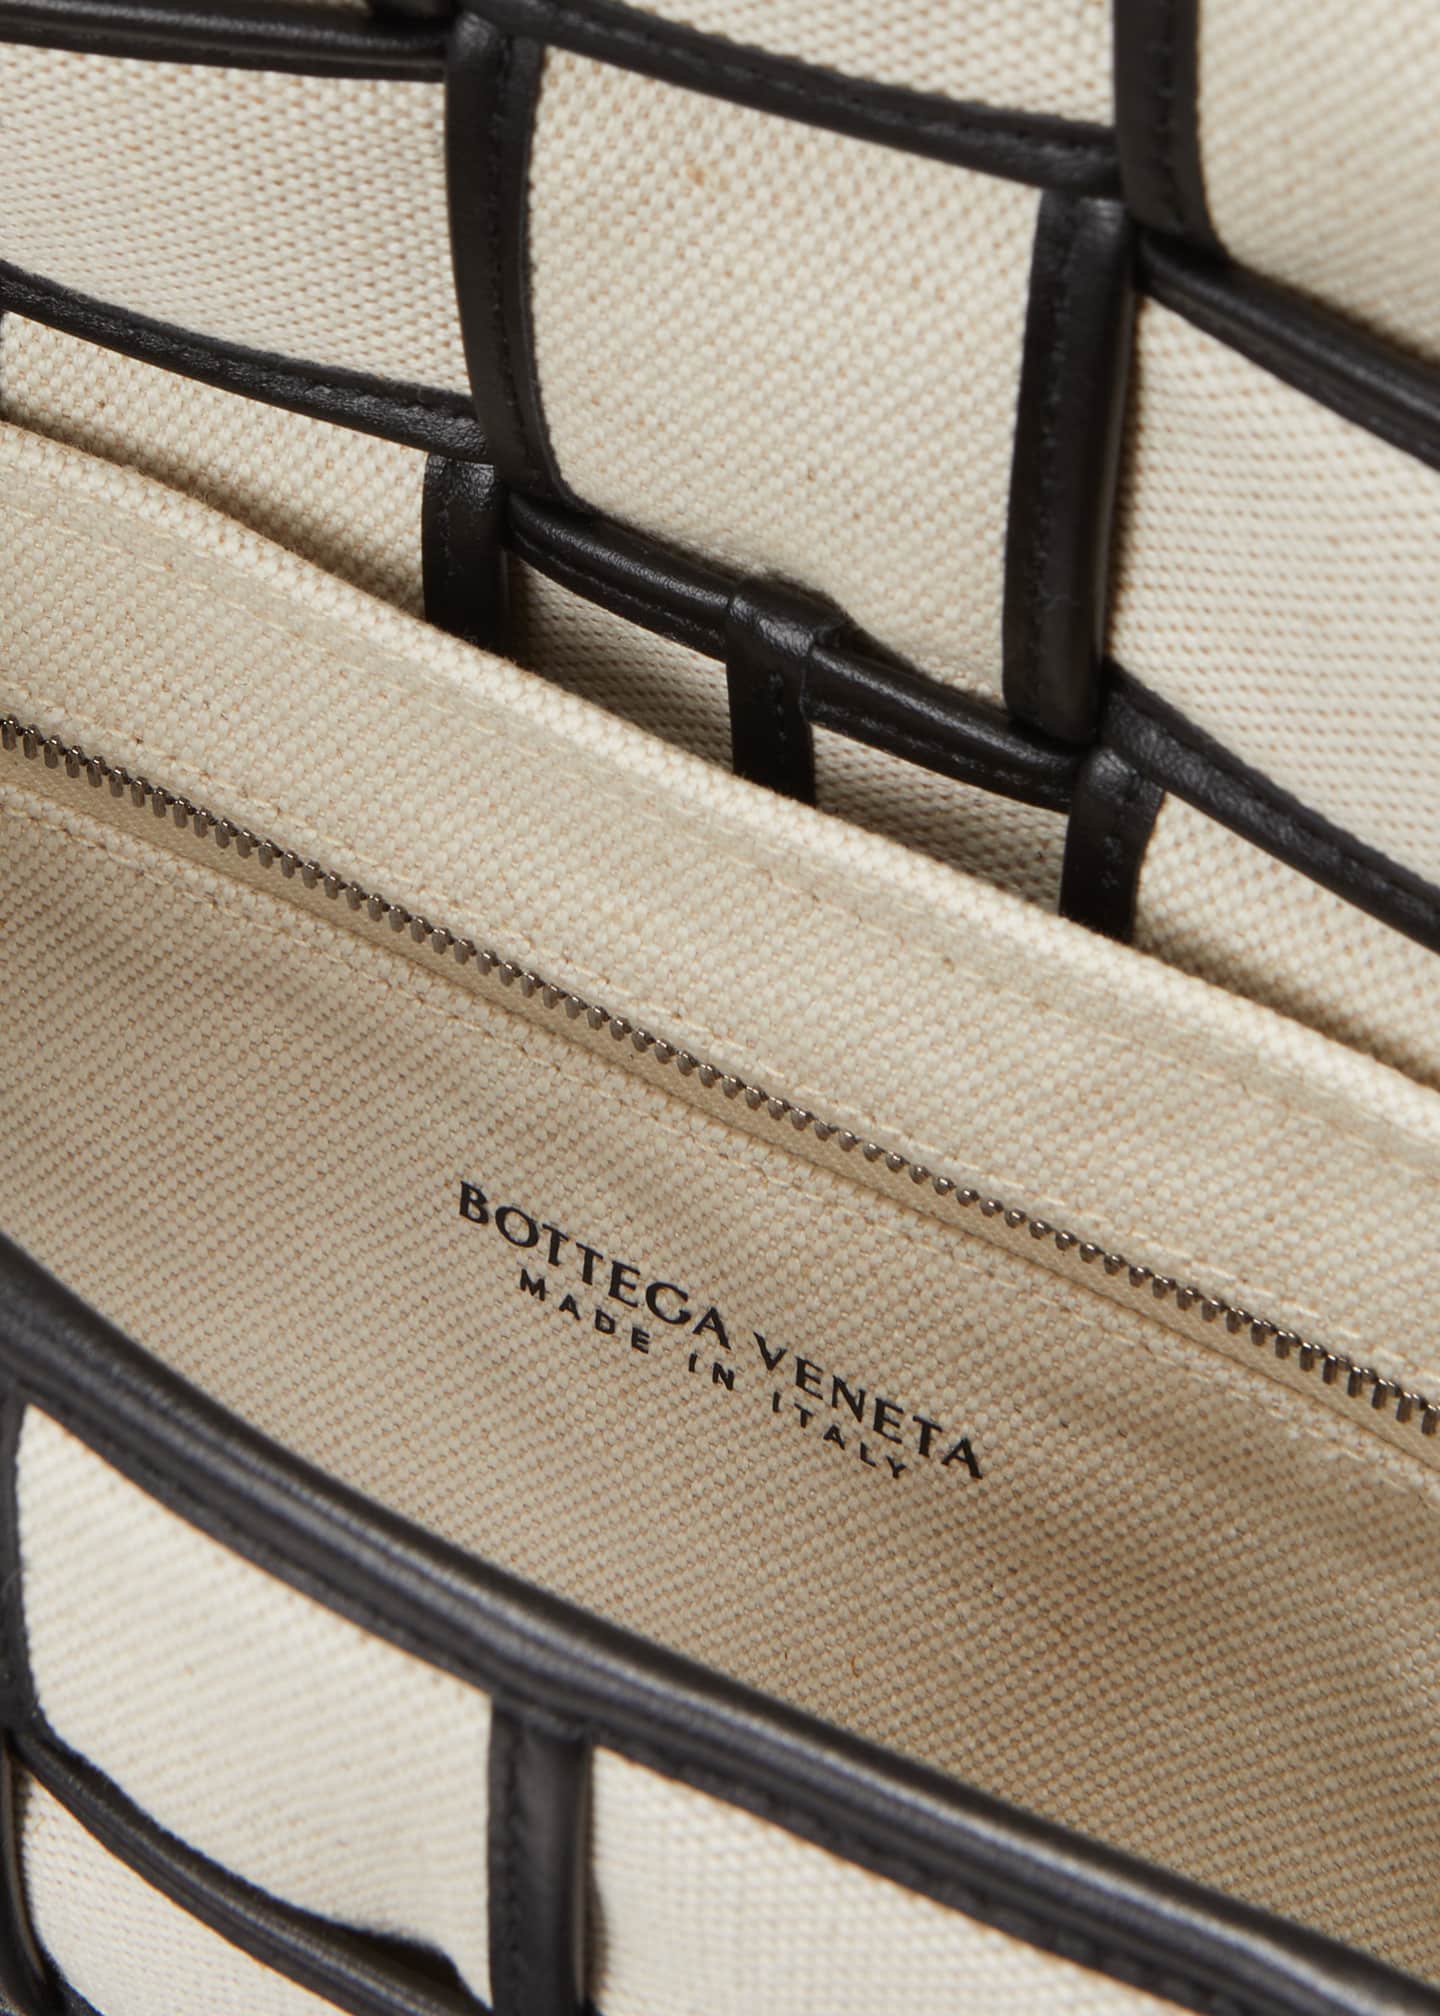 Bottega Veneta Men's Cassette Small Crossbody Bag - Bergdorf Goodman